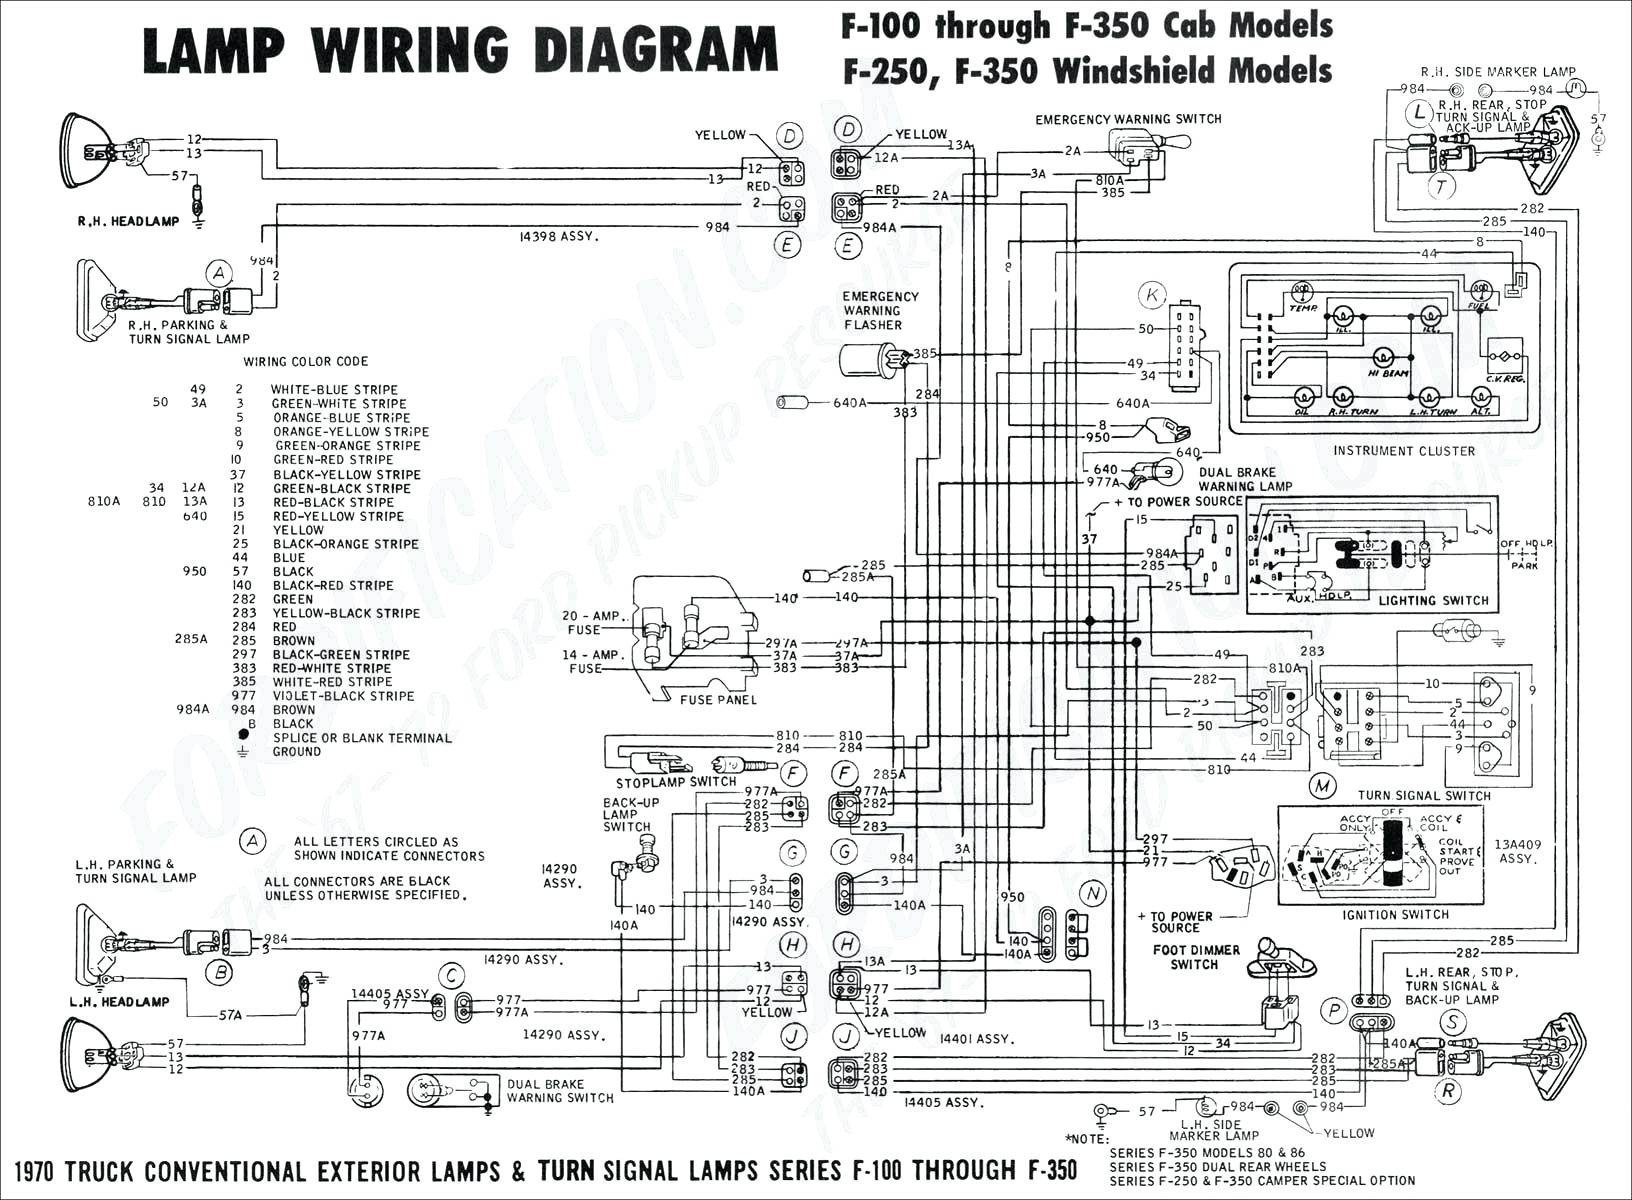 Brake Light Turn Signal Wiring Diagram Blue Bird Turn Signal Wiring Diagram Wiring Diagram toolbox Of Brake Light Turn Signal Wiring Diagram